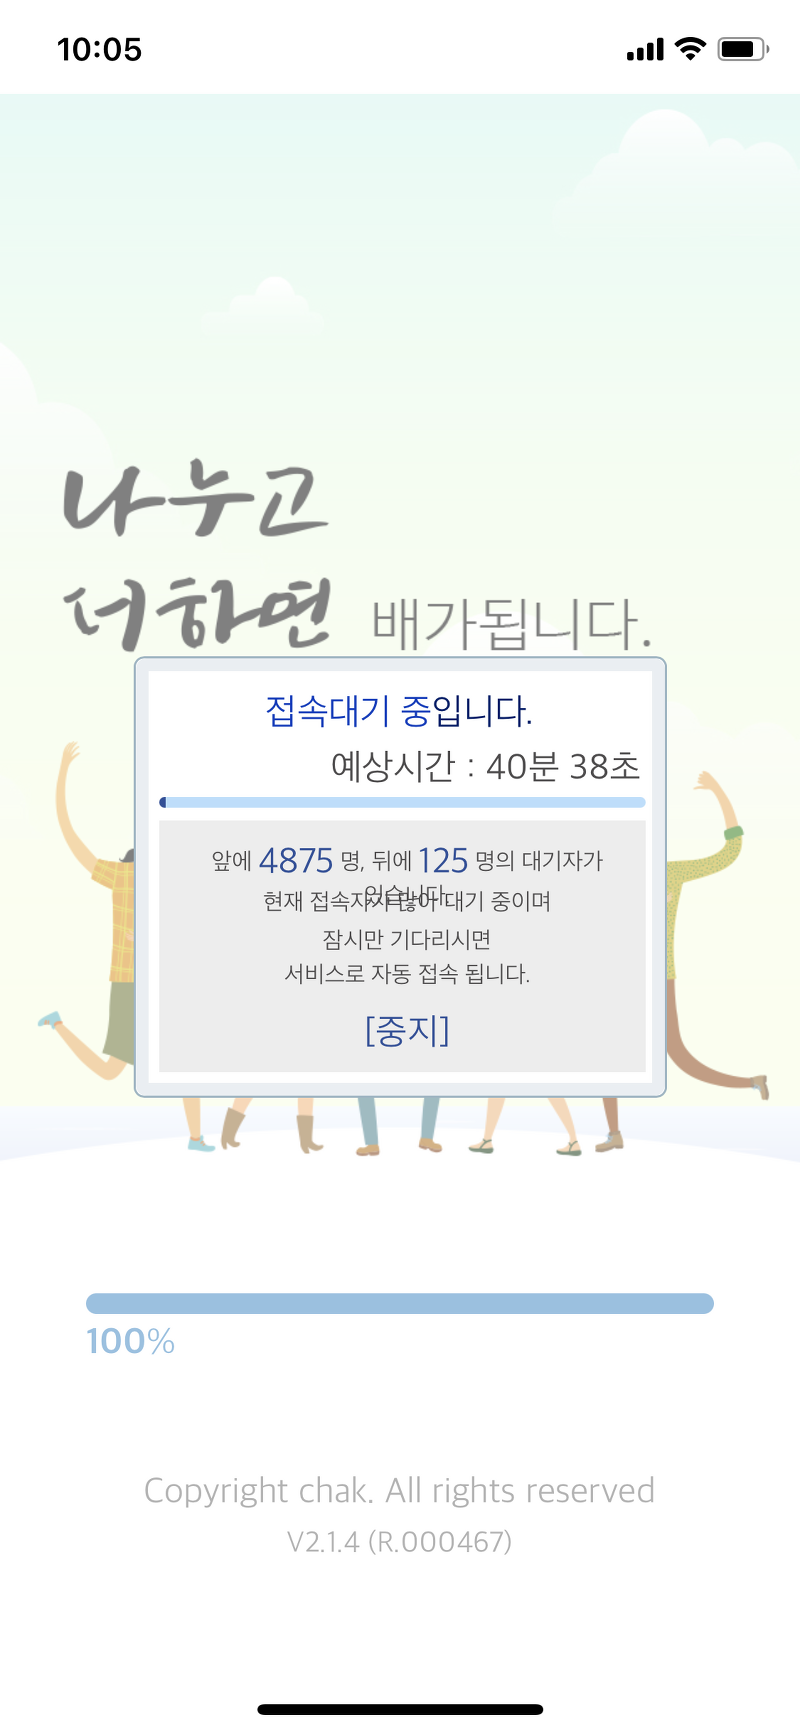 지역 상품권 chak 모바일 앱 접속지연